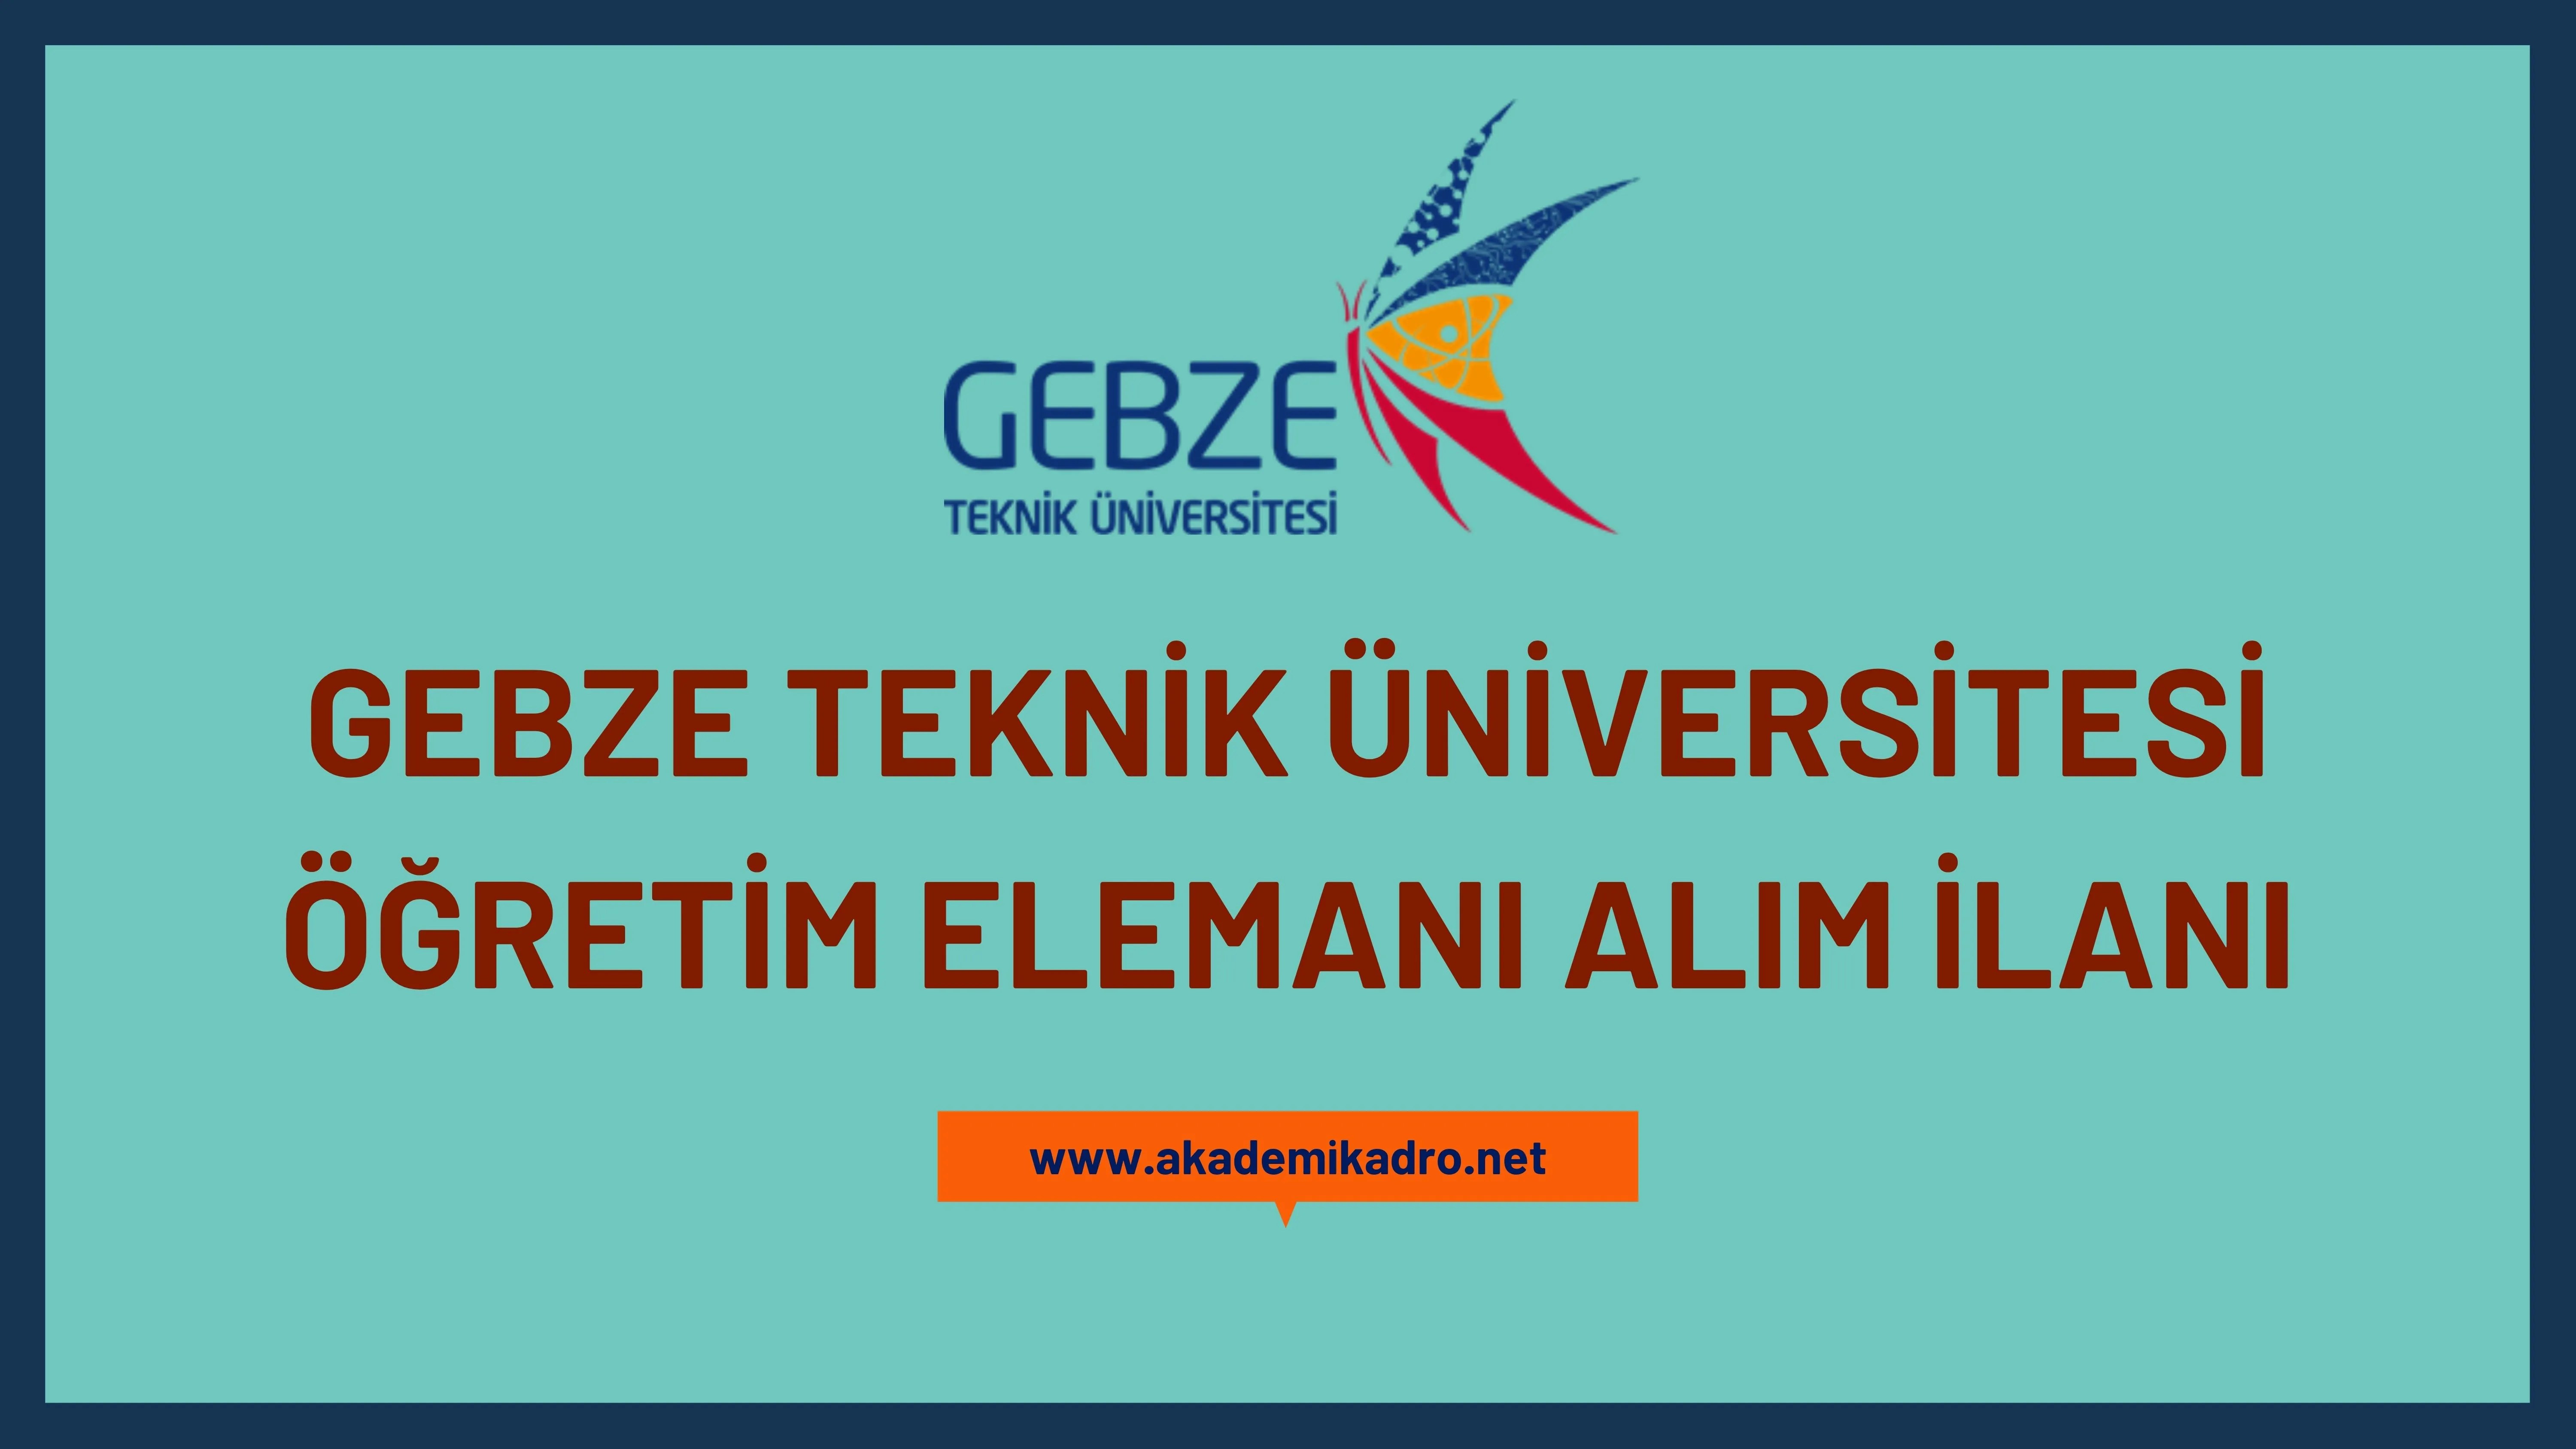 Gebze Teknik Üniversitesi 10 Araştırma Görevlisi, 2 Öğretim Görevlisi ve 23 Öğretim üyesi alacaktır. Son başvuru tarihi 14 Aralık 2022.